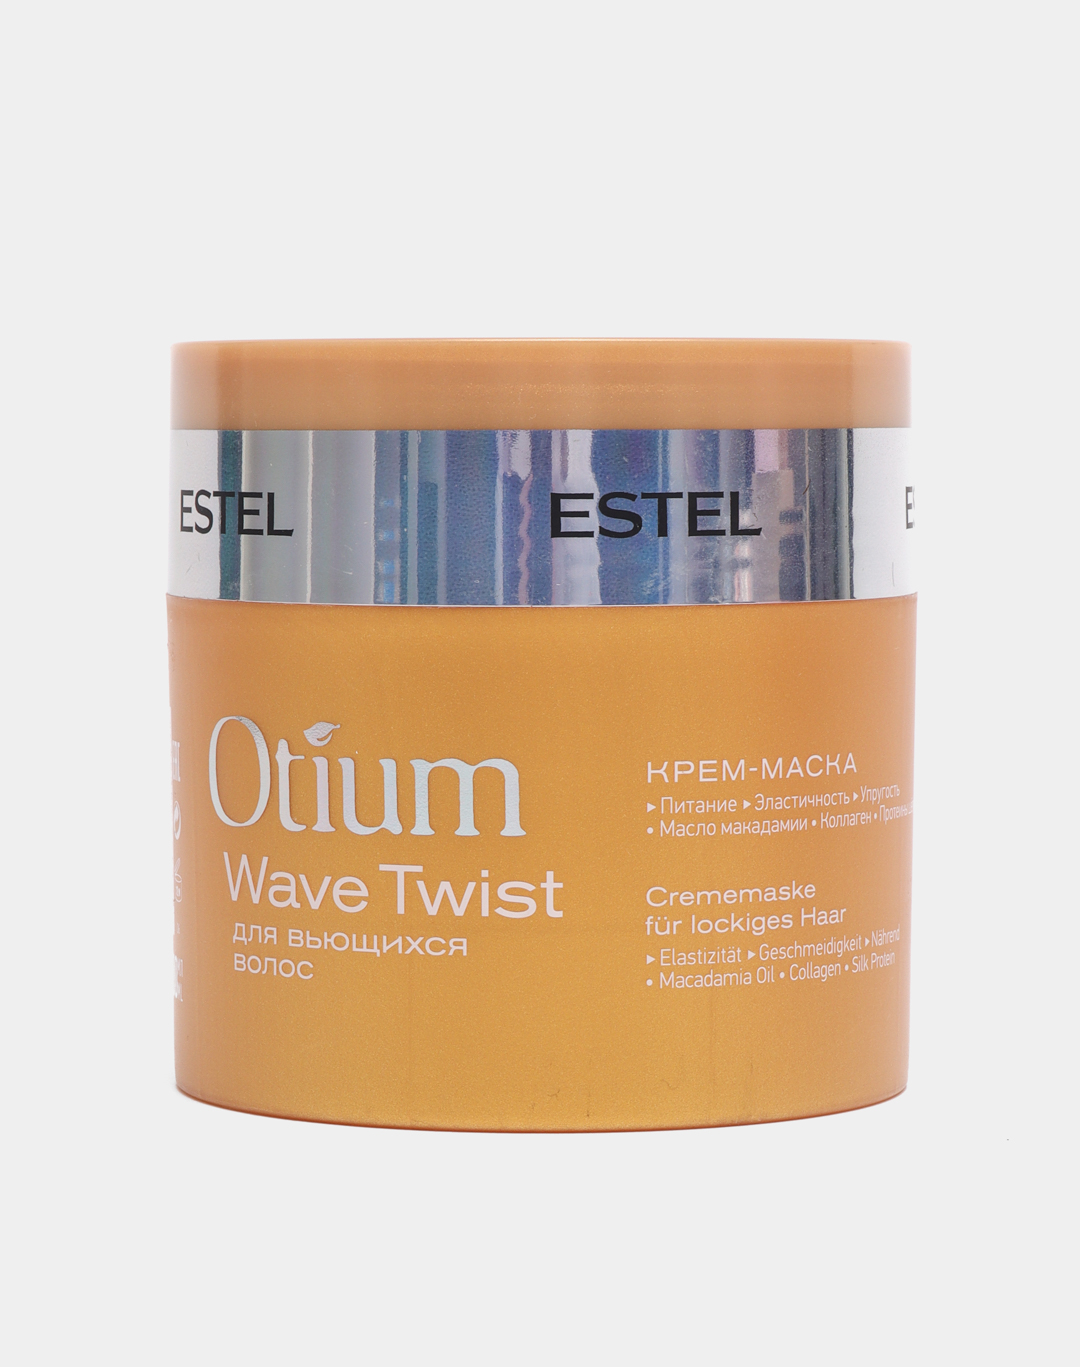 Estel otium twist крем-маска для вьющихся волос маска для волос